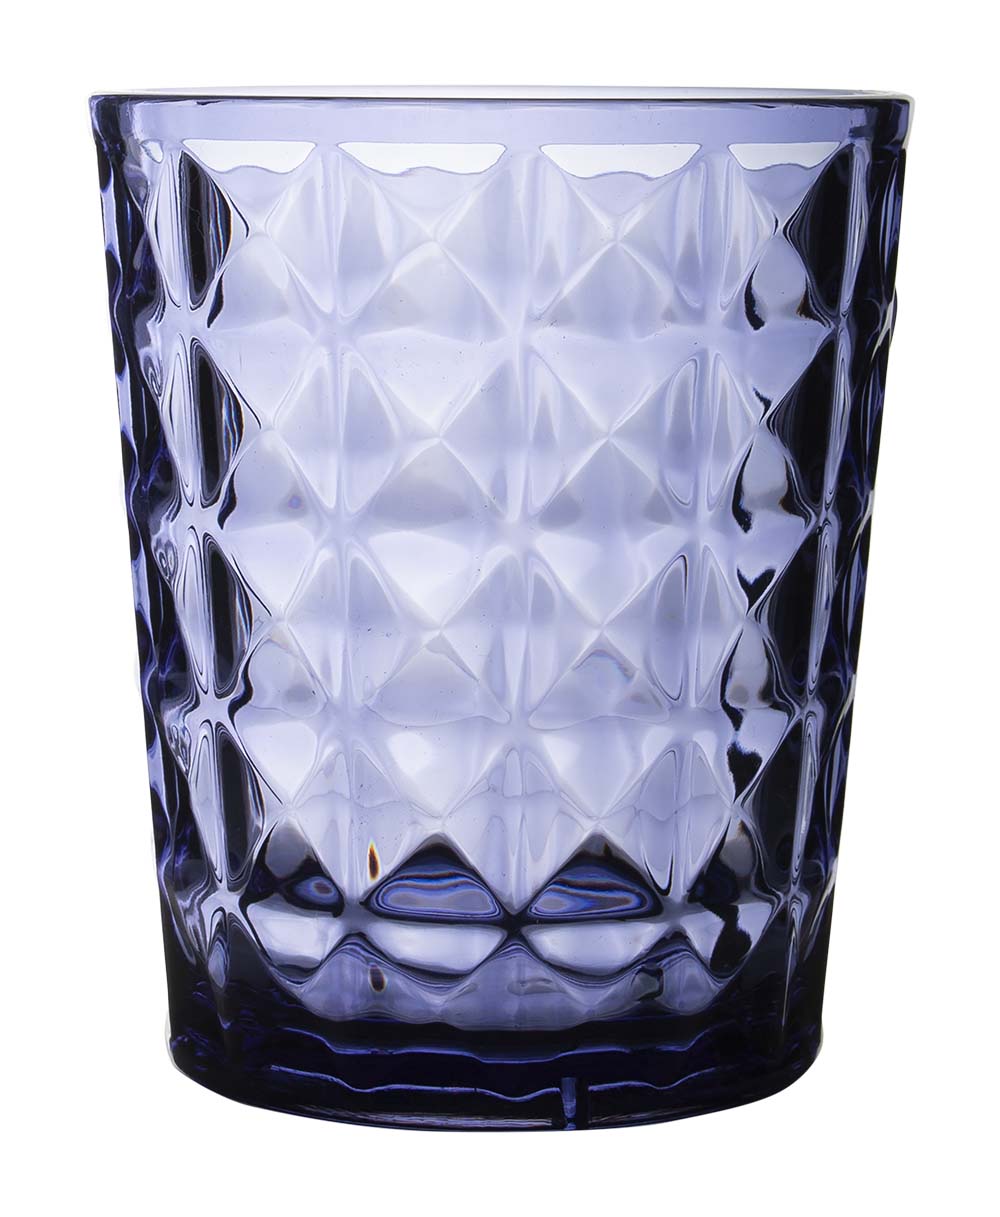 6967965 Een stijlvol donkerblauw waterglas uit de Stone line collectie. Vrijwel onbreekbaar door hoogwaardig SAN materiaal. Bestaat uit een set van 2 stuks. Zeer gemakkelijk te reinigen en langdurig te gebruiken, wat het glas erg duurzaam maakt. Daarnaast is het waterglas erg lichtgewicht en krasbestendig. Inhoud: 480 ml.